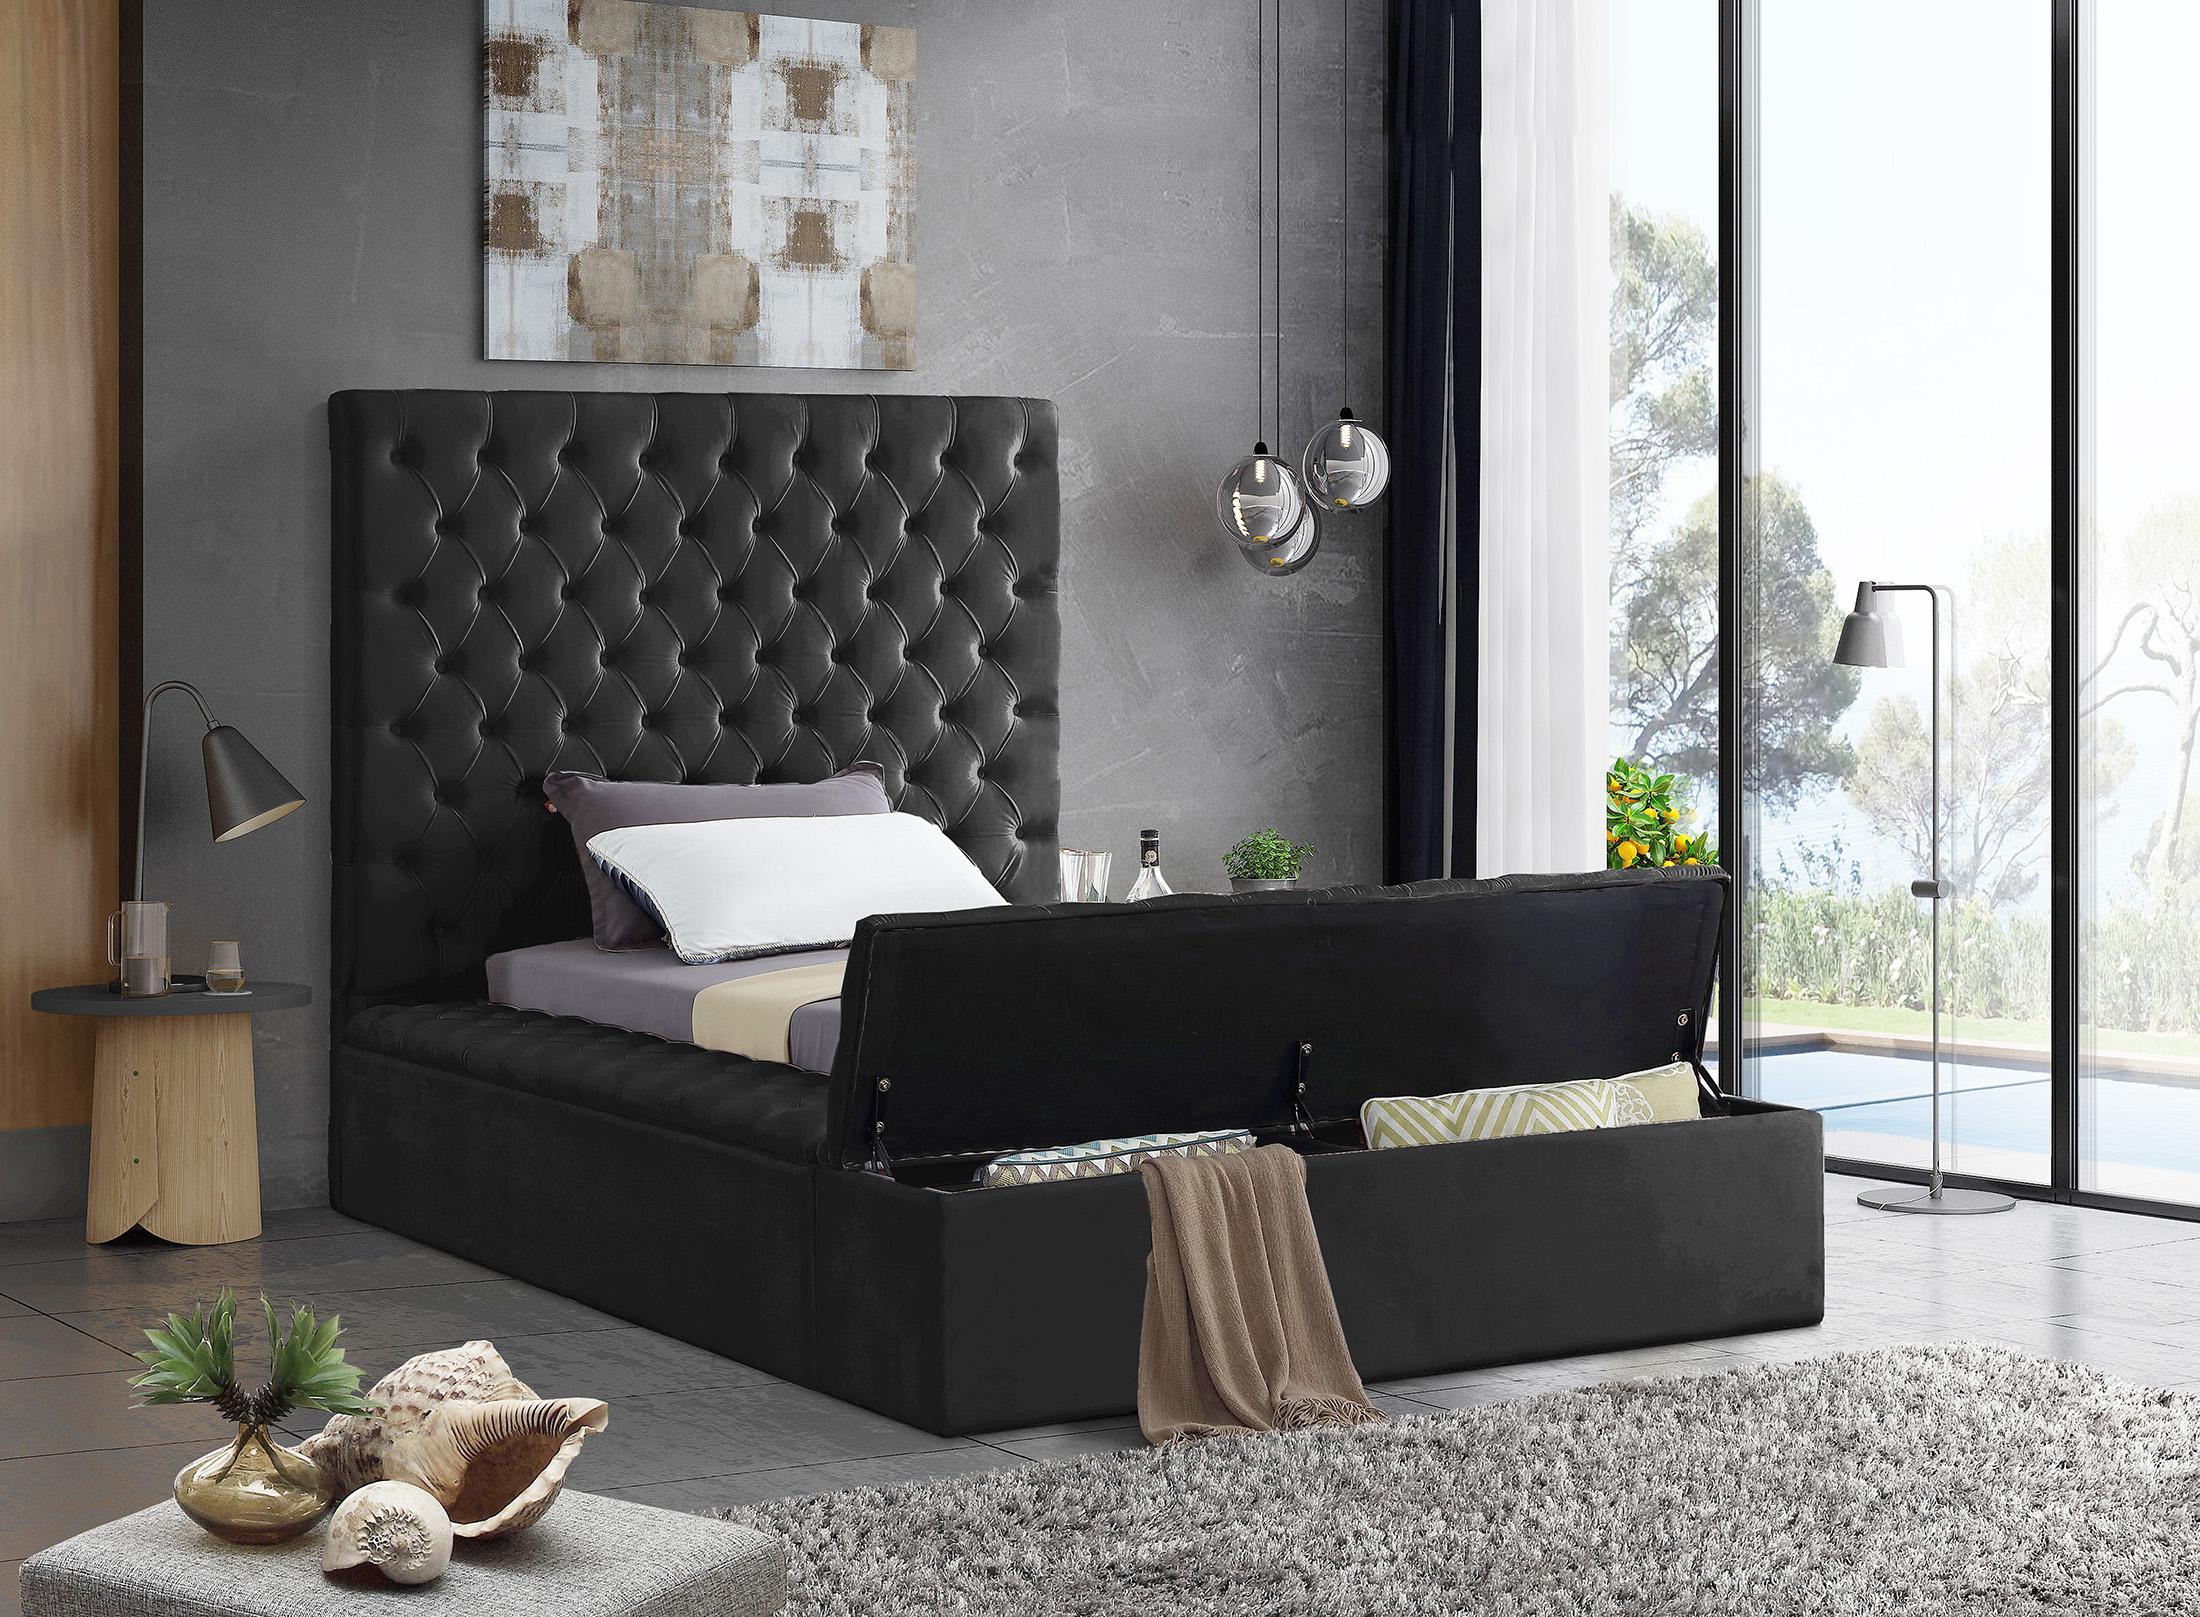 

    
Meridian Furniture BLISS Black-T Storage Bed Black BlissBlack-T
